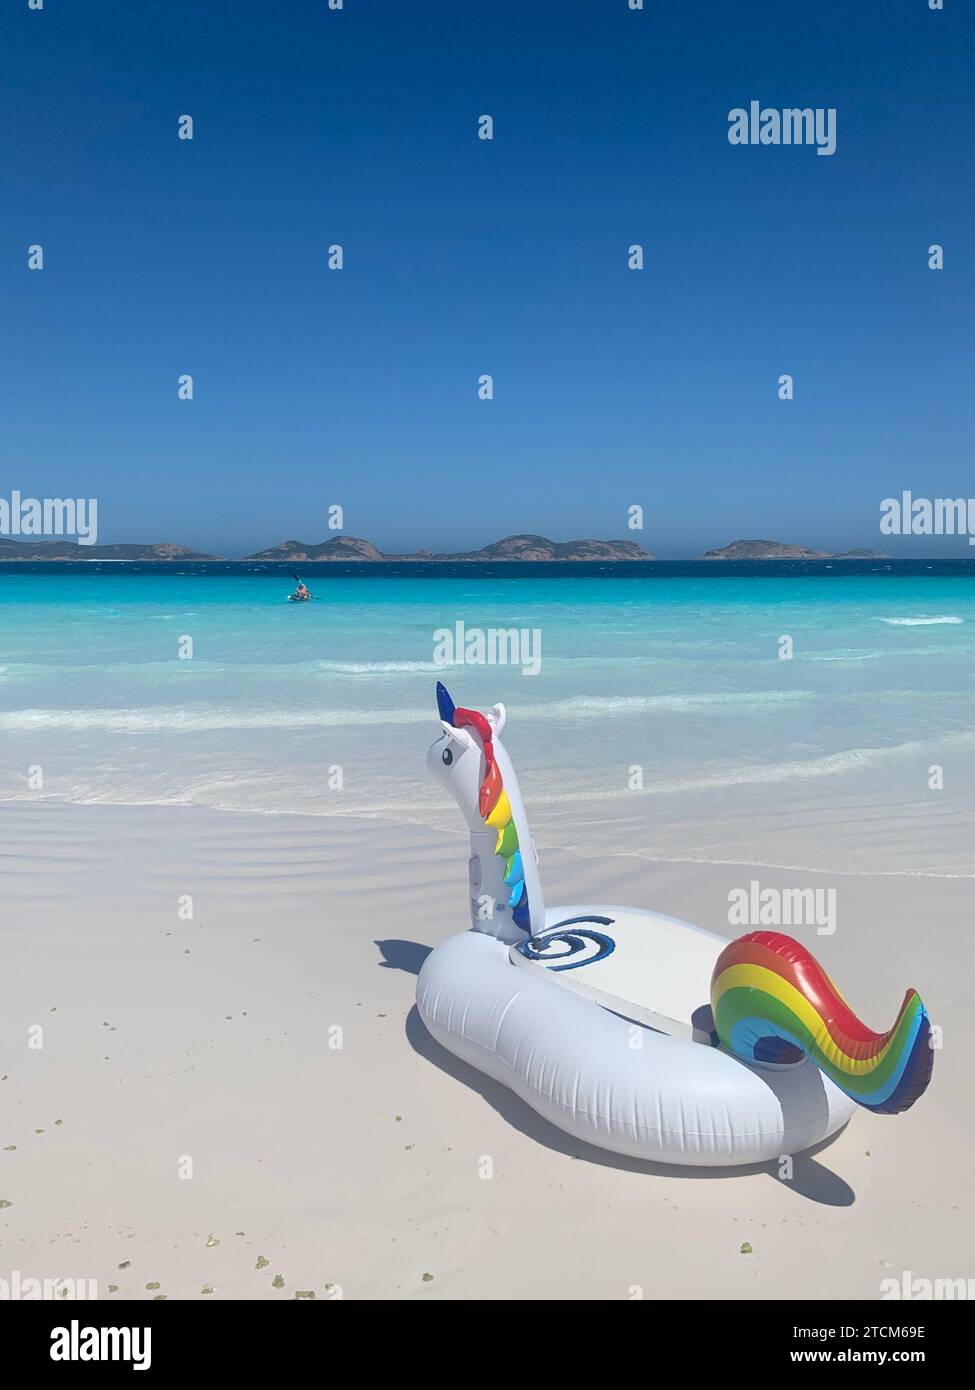 Une licorne gonflable fantaisiste de couleur arc-en-ciel flottant sur une plage en toile de fond, créant une scène vibrante et joyeuse pour tout projet Banque D'Images